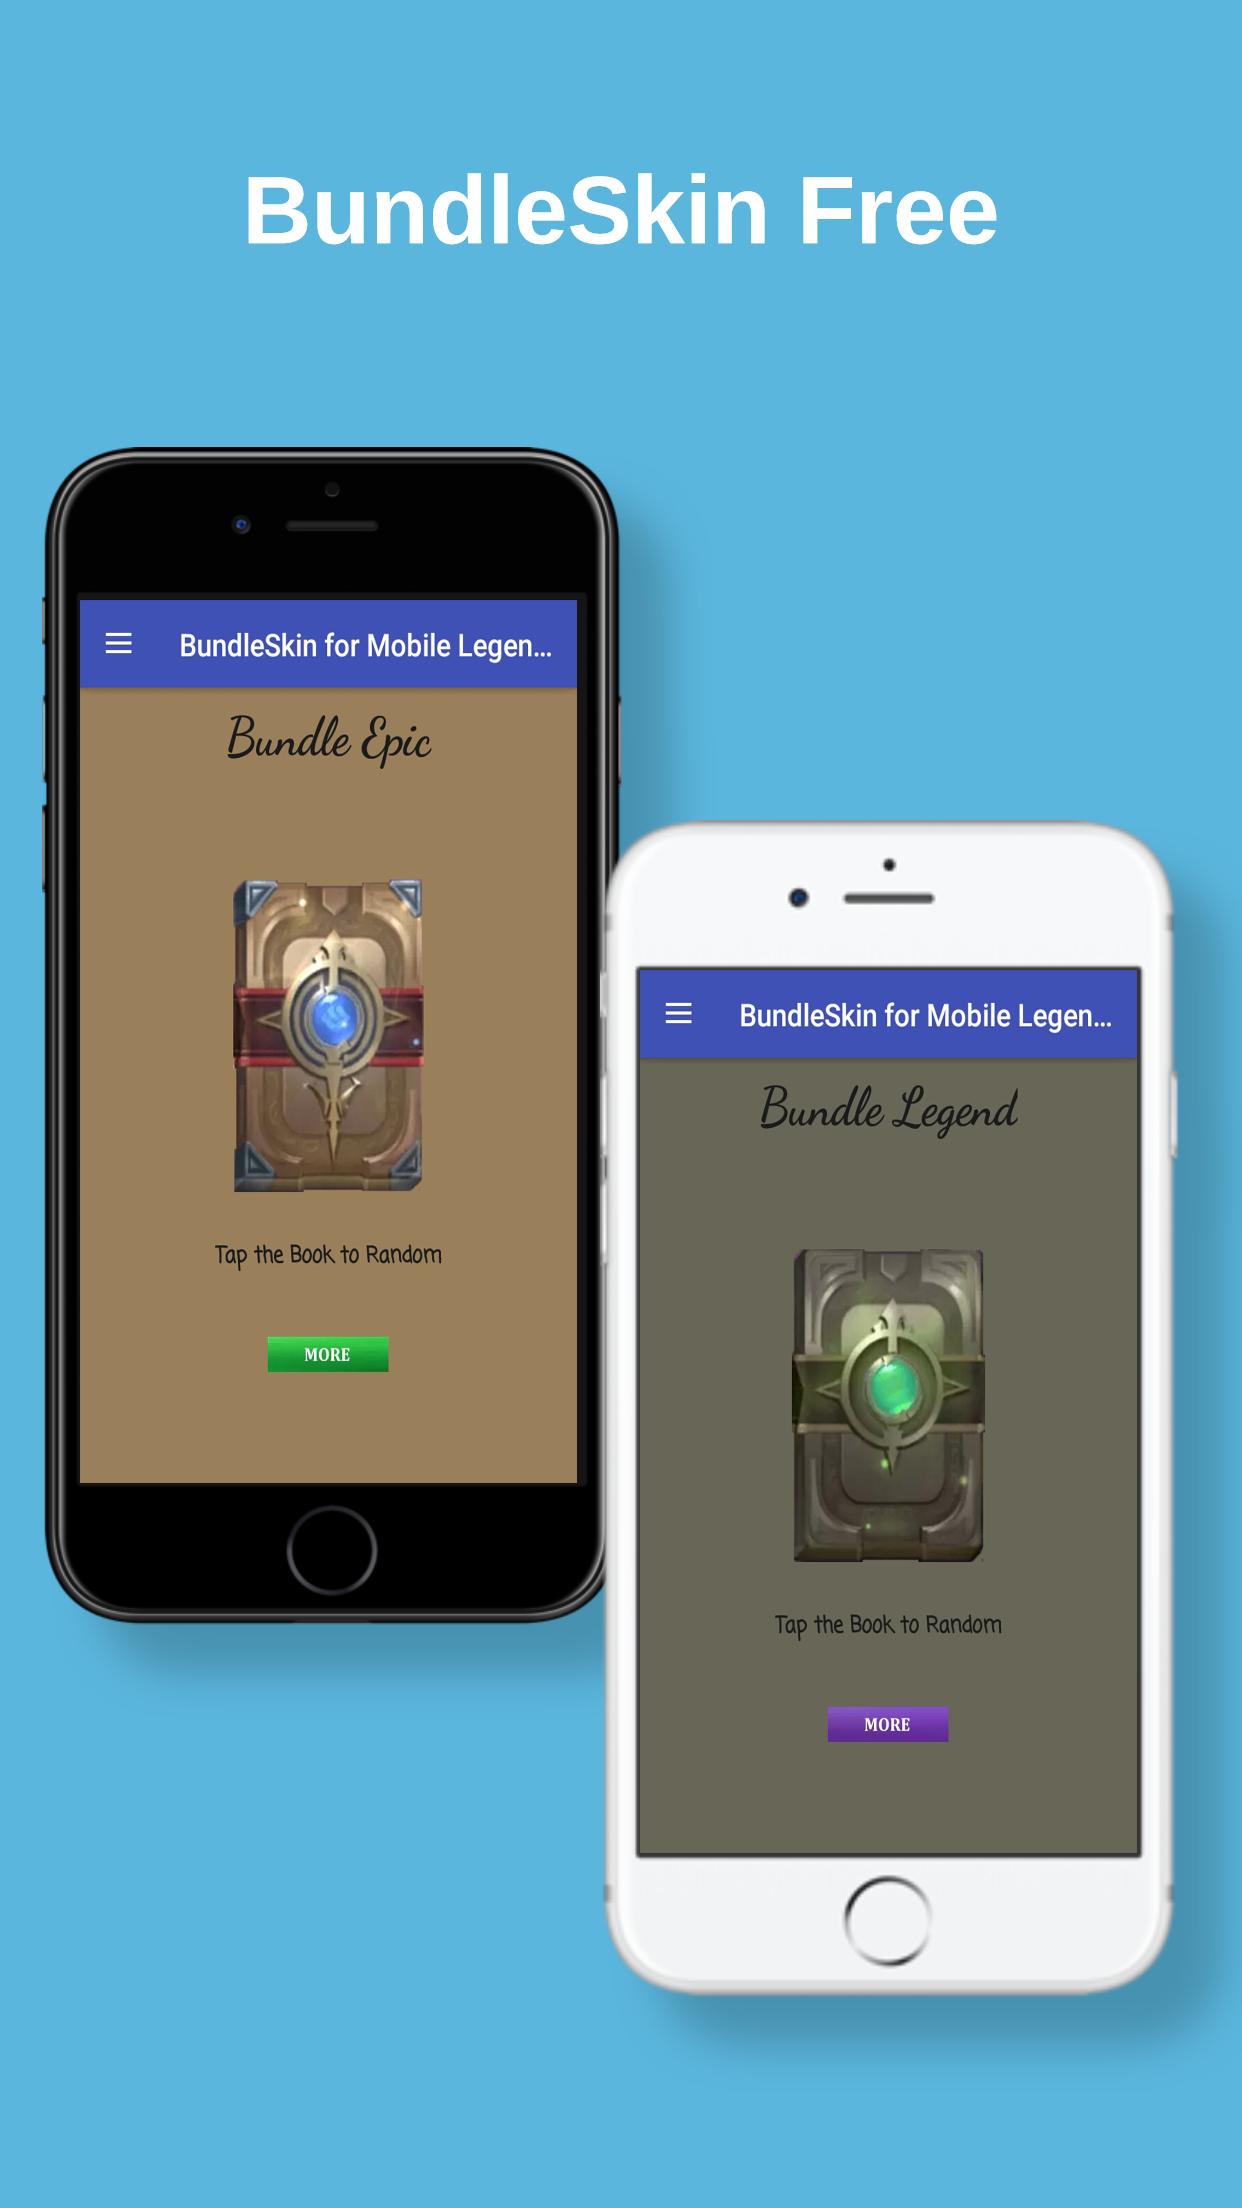 Bundle Skin Free Mobile Legends Rewards for Android - APK ... - 